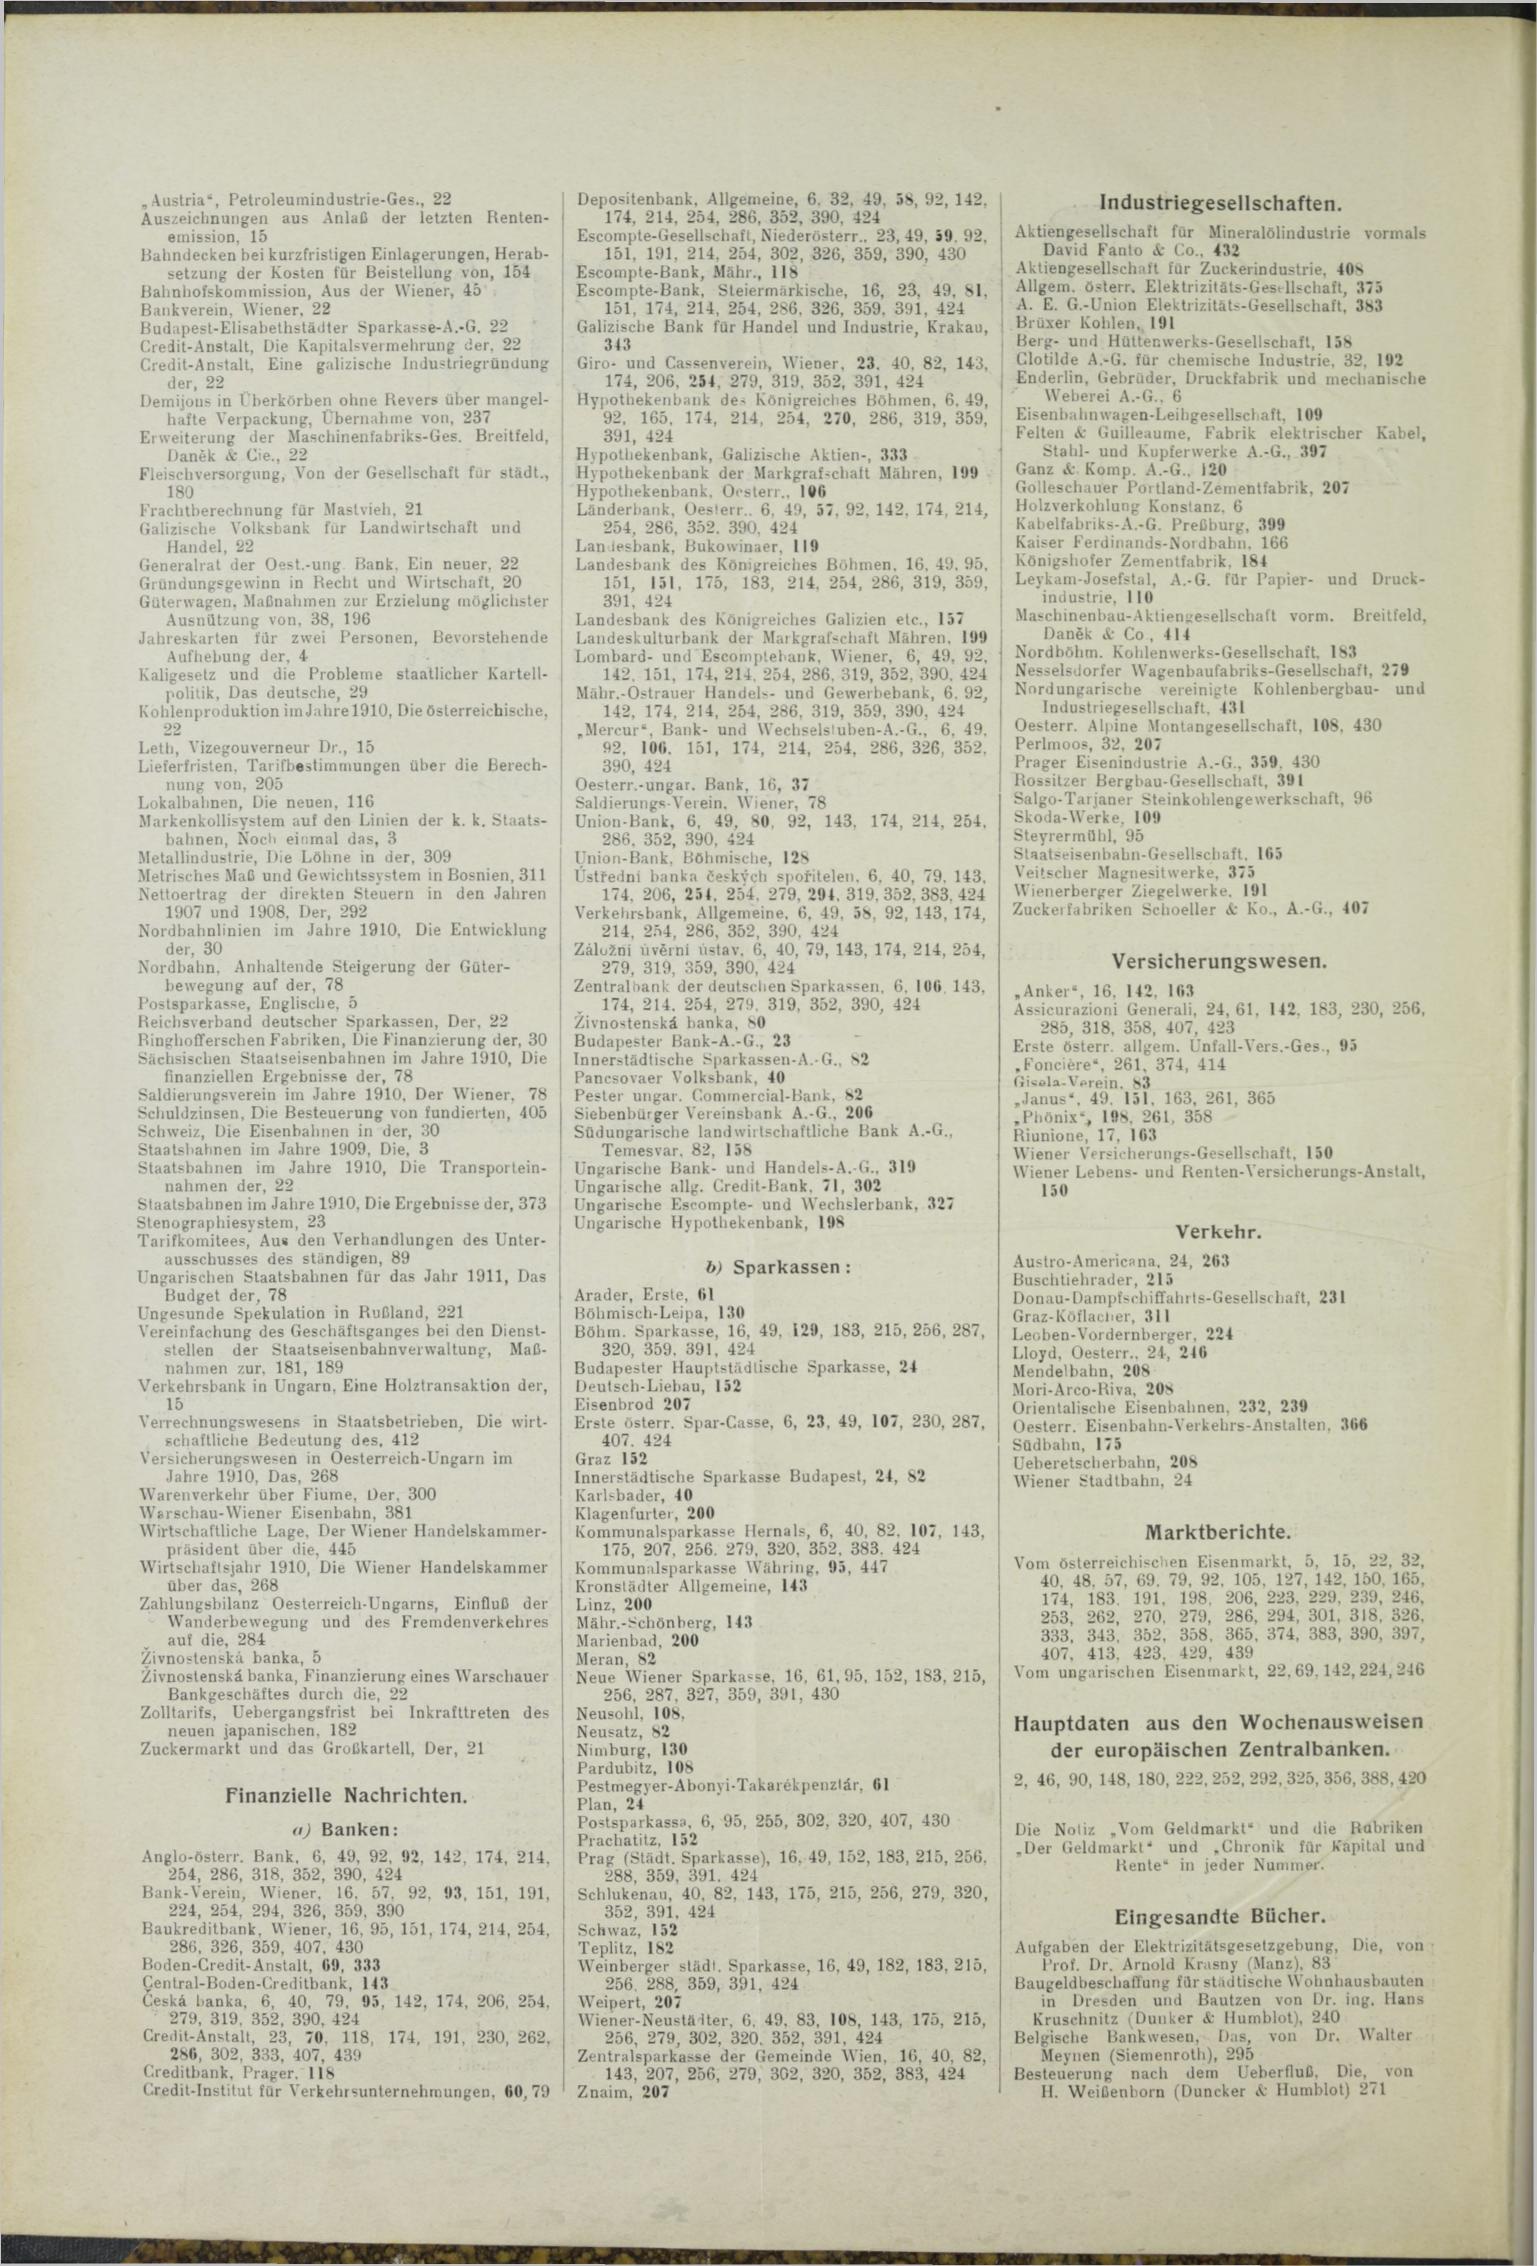 Der Tresor 08.07.1911 - Seite 10